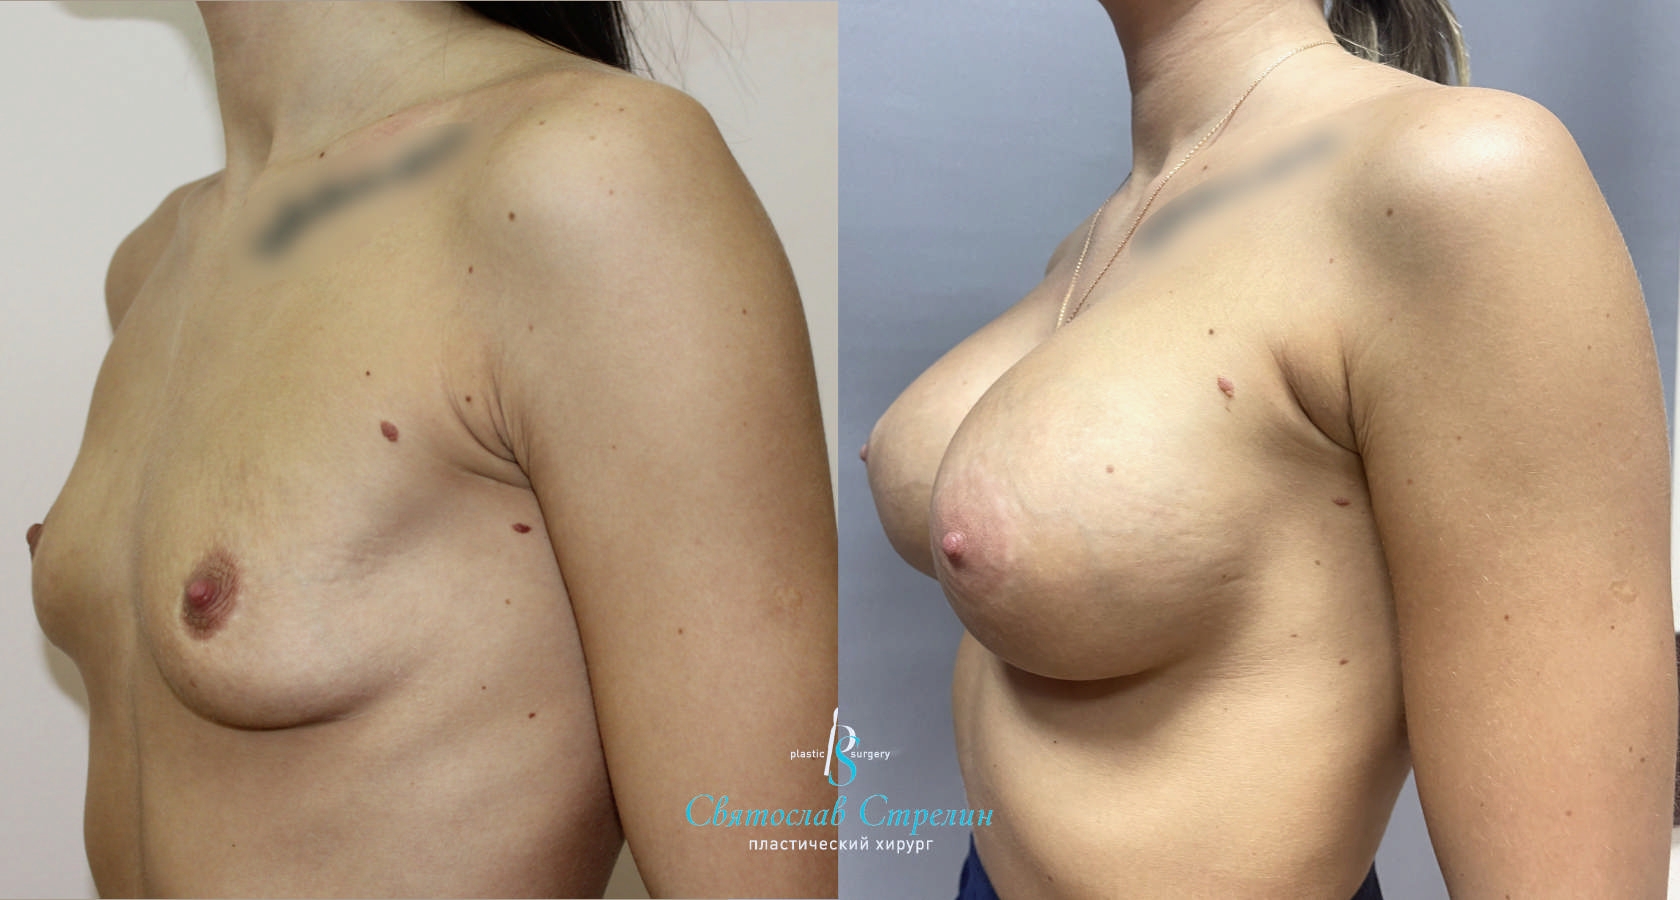 Увеличение груди, 5 лет после операции, импланты Себбин  365 мл, круглые, высокая проекция, подмышечныйдоступ